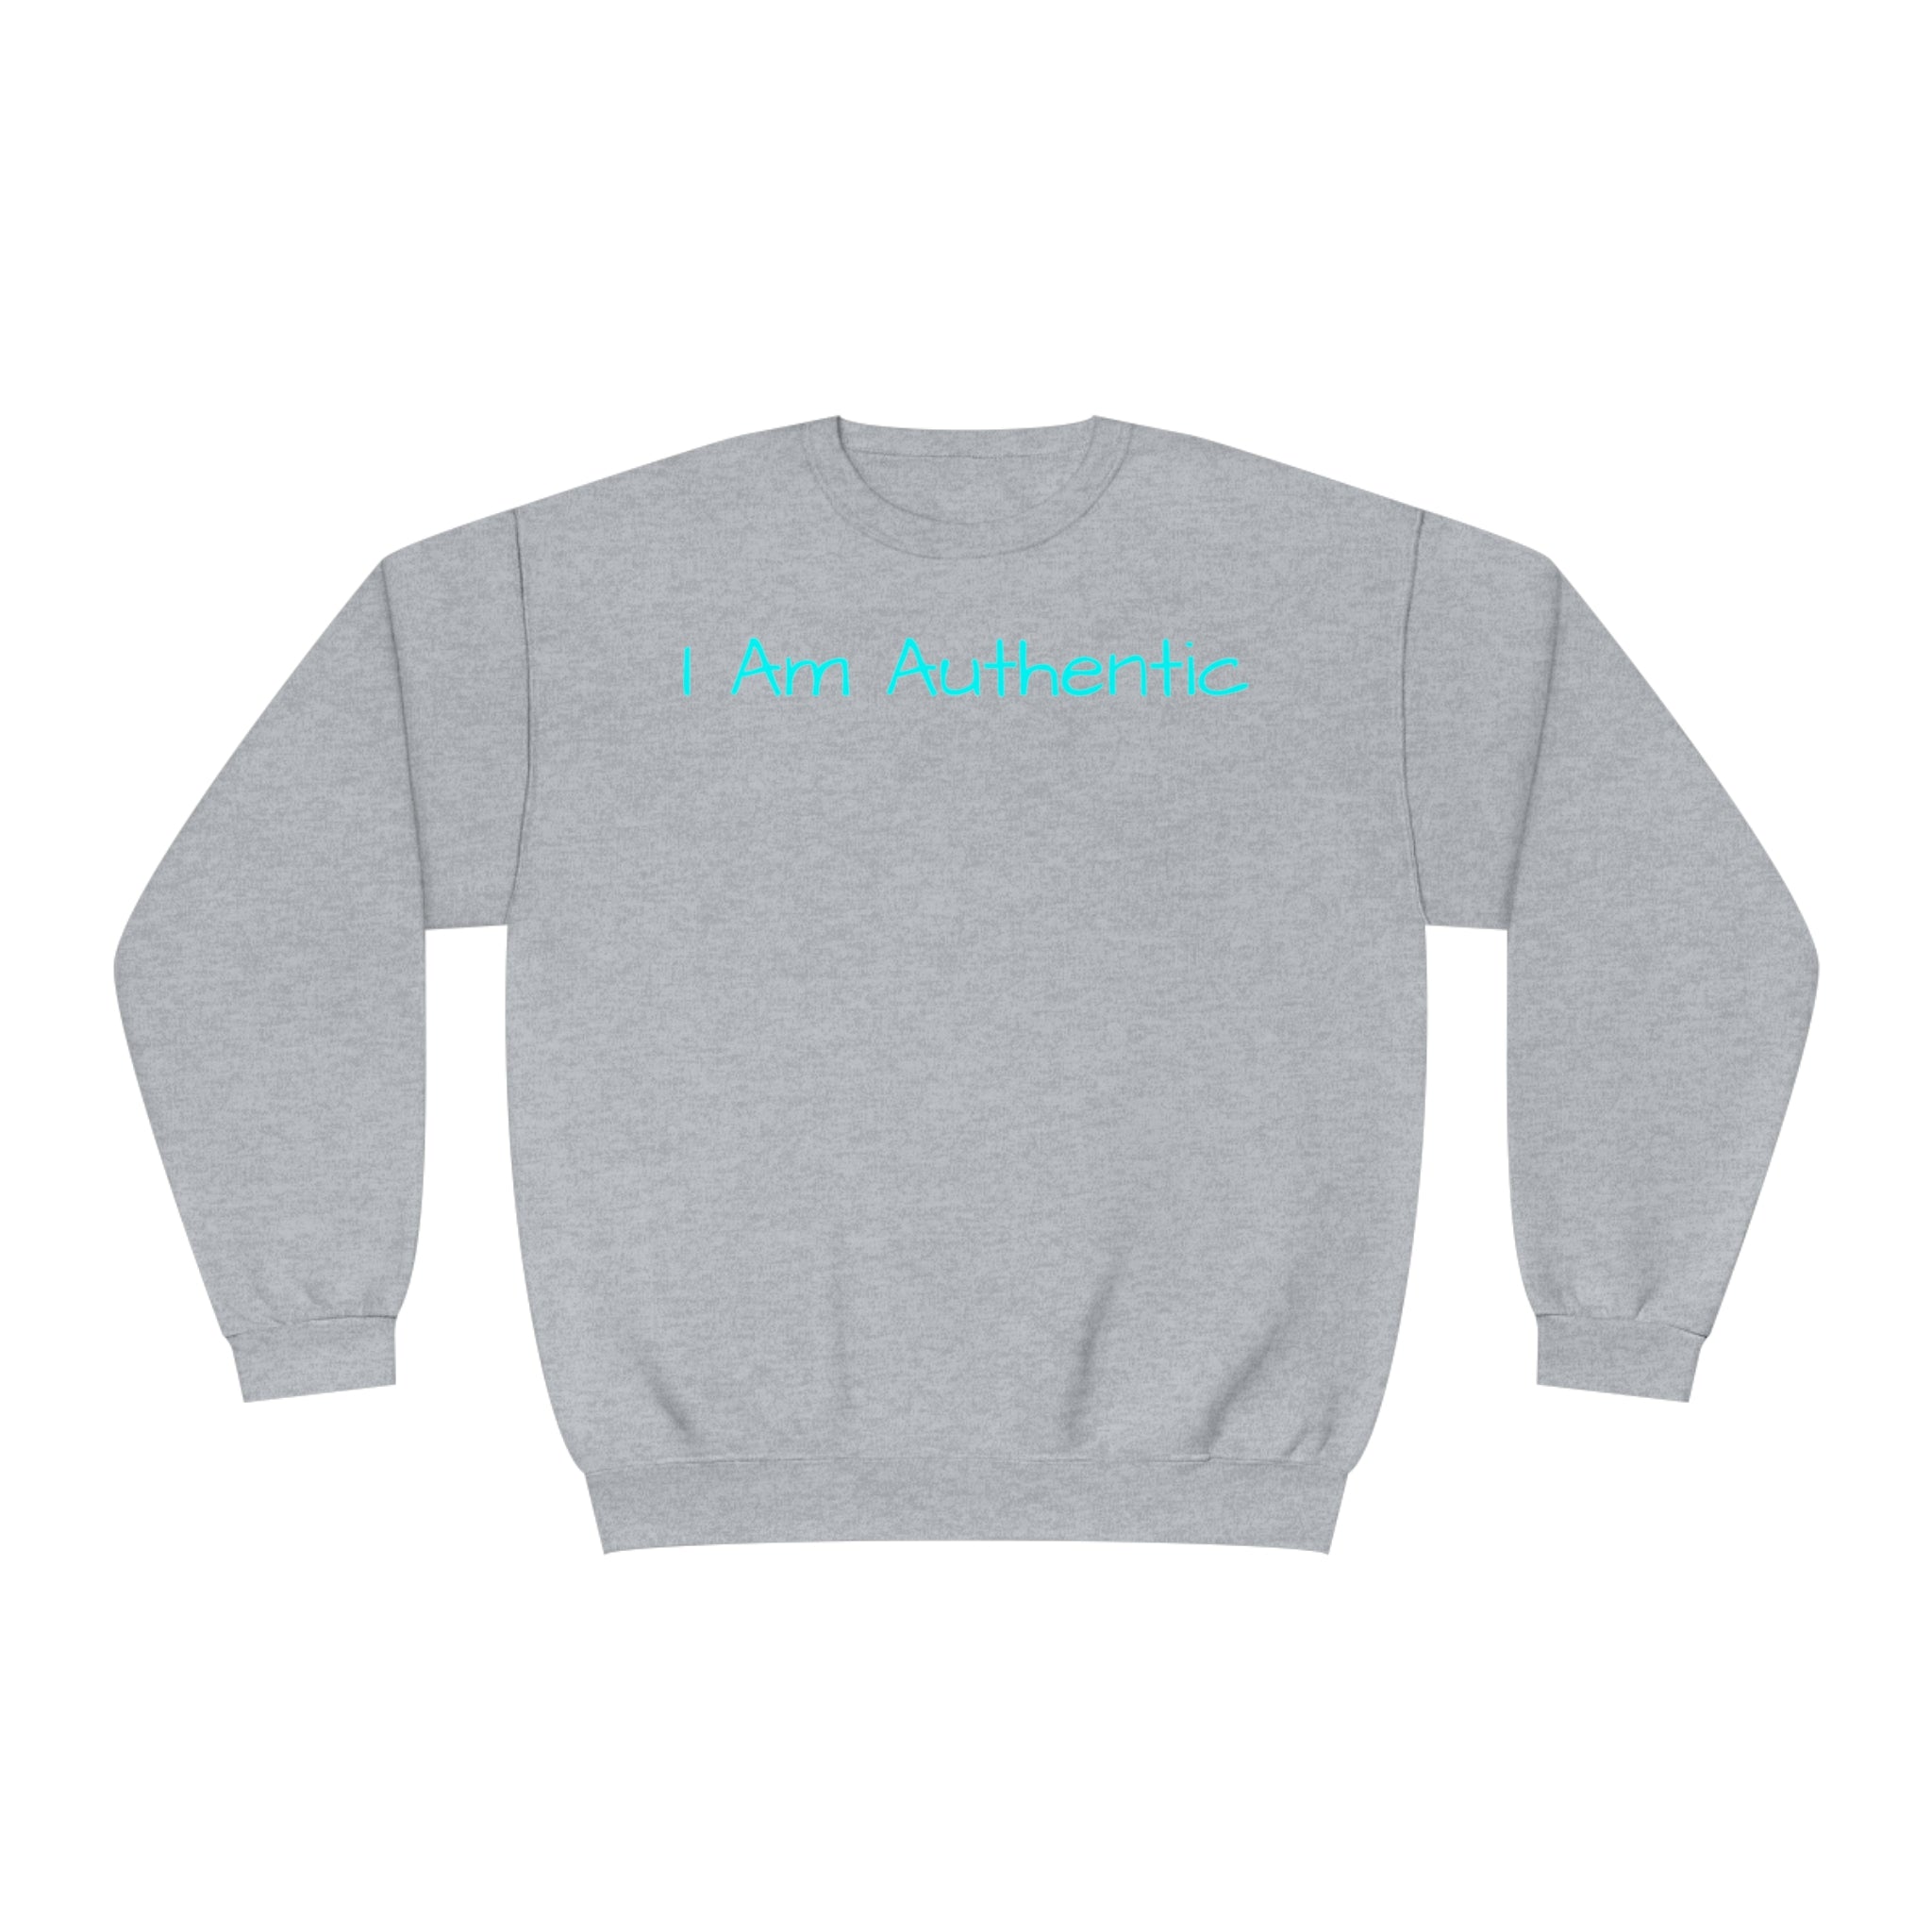 I Am Authentic Fleece Sweatshirt: Comfort & Positivity Sandstone Comfy Sweater Cozy Sweatshirt Crewneck Sweatshirt Fleece Pullover Graphic Sweatshirt Men's Sweatshirt Streatwear Sweatshirt Warm Outerwear Women's Sweatshirt Sweatshirt 14126538896570949287_2048 Printify